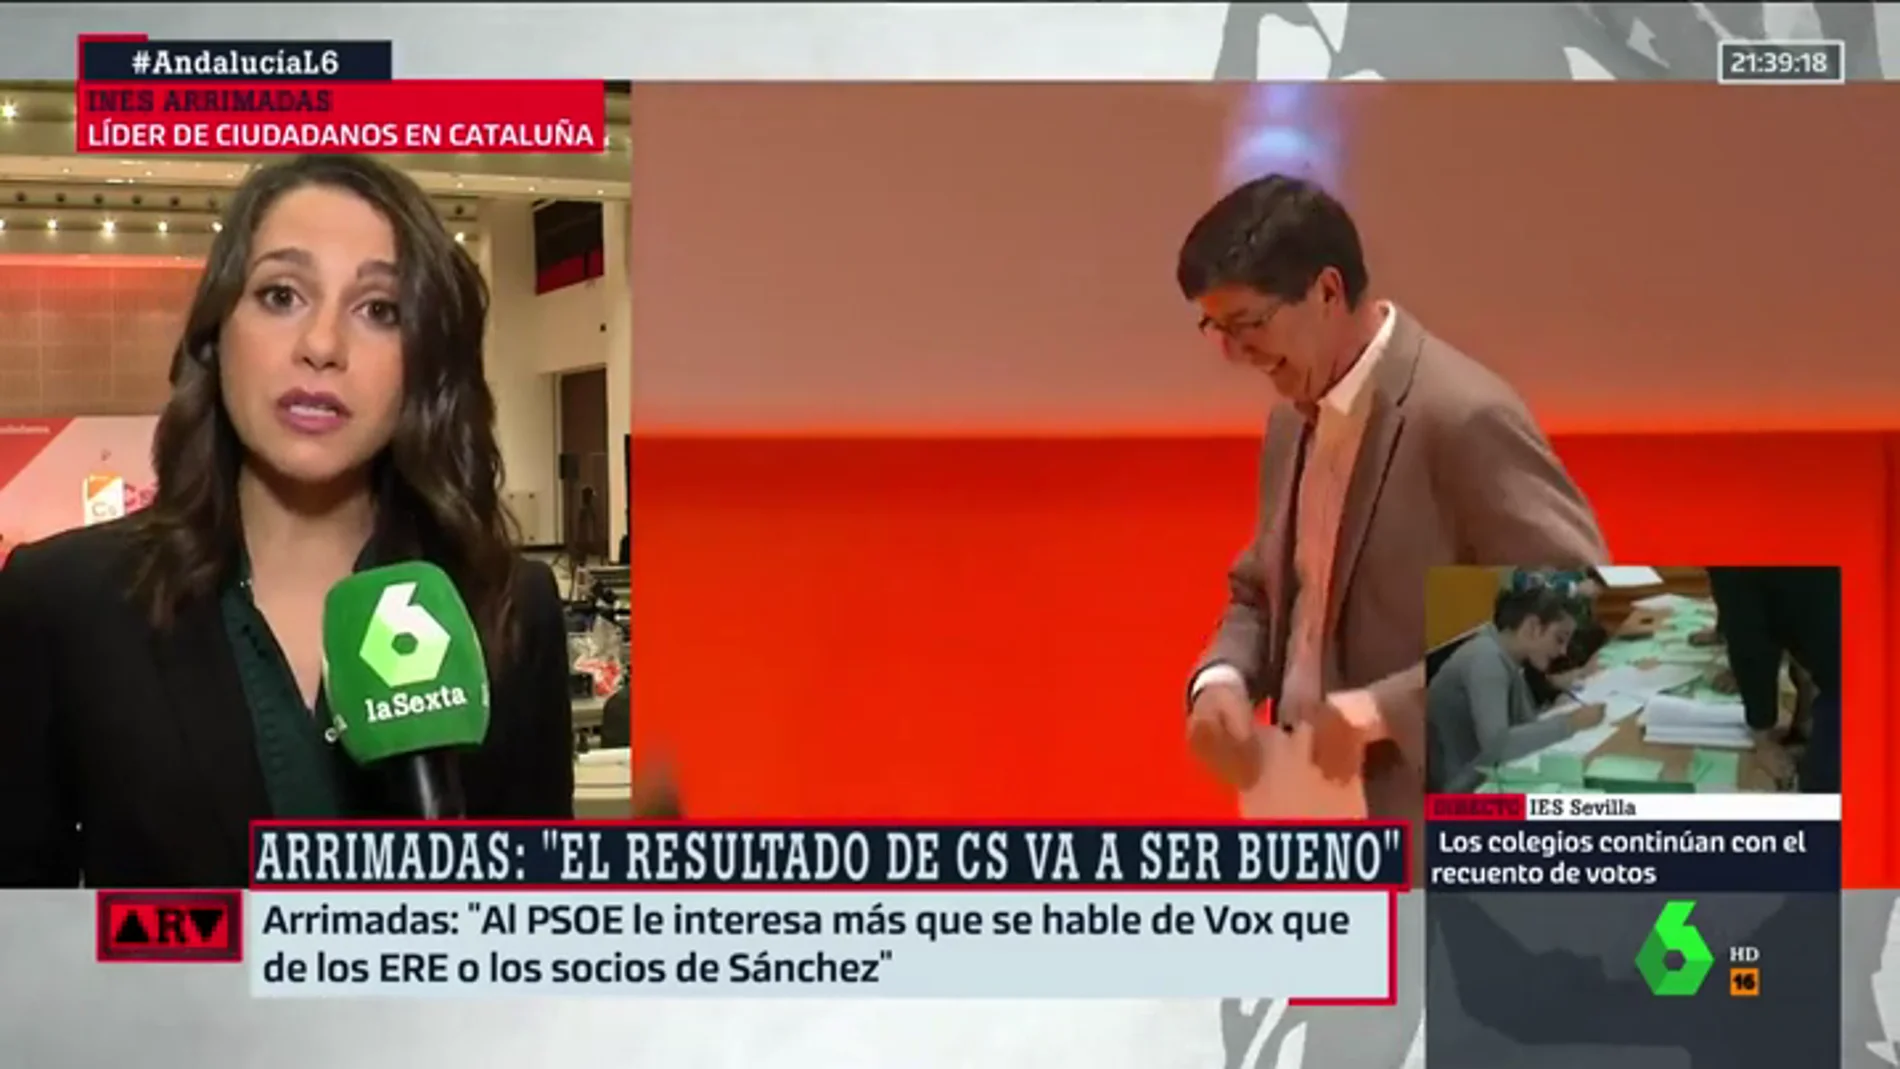 Arrimadas: "Al PSOE le interesa más que se hable de Vox que de los ERE o de los socios de Sánchez"